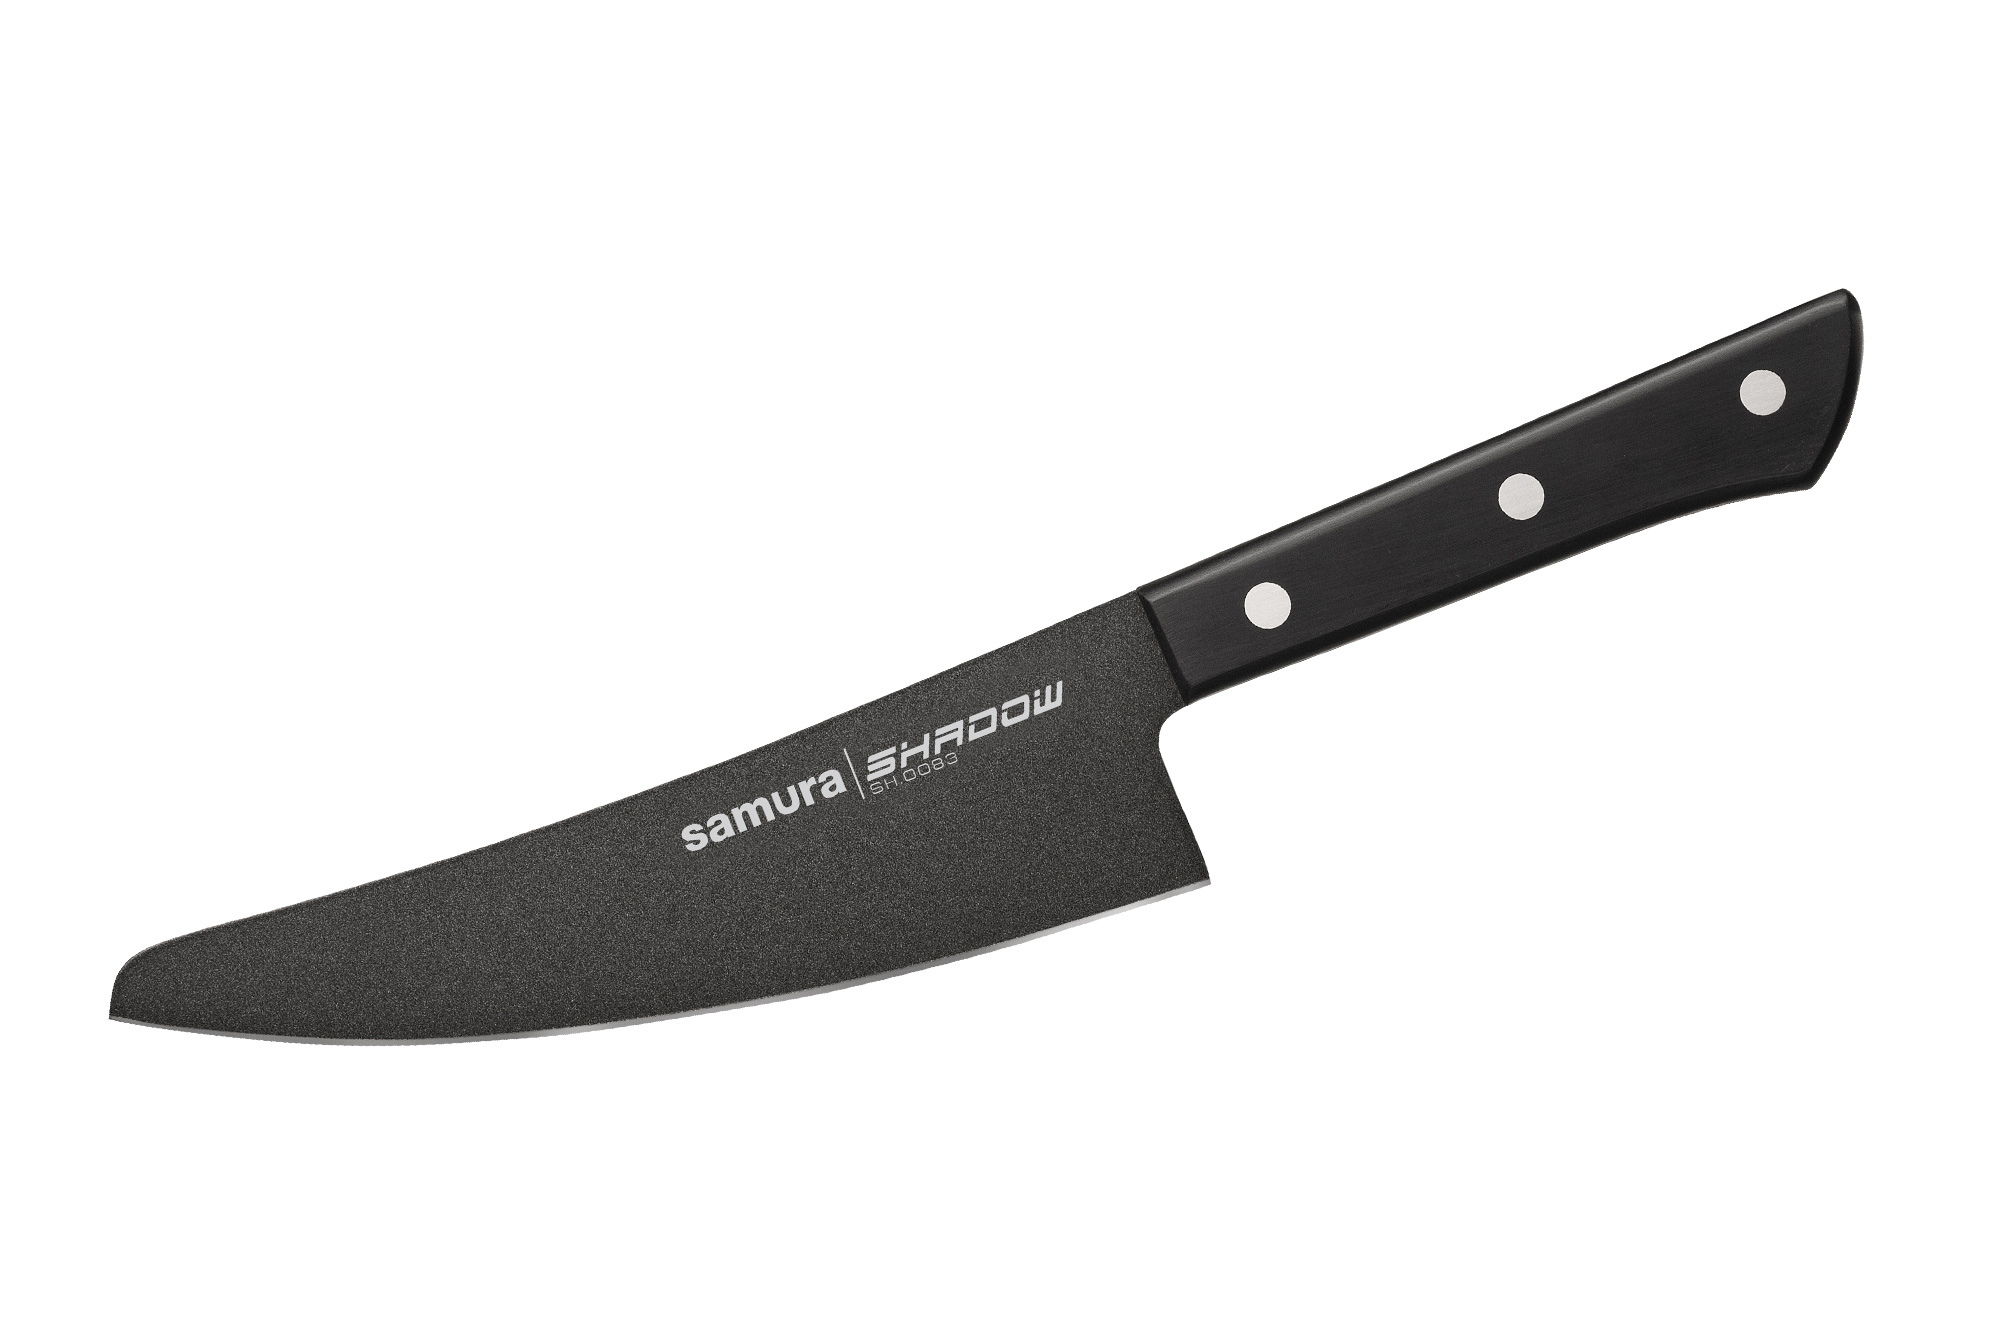 Купить ножи самура в интернет. Нож Samura Pro-s SP-0010. Нож шеф Samura Pro-s. Топорик для мяса кухонный Samura Harakiri. Нож шеф Samura Harakiri.